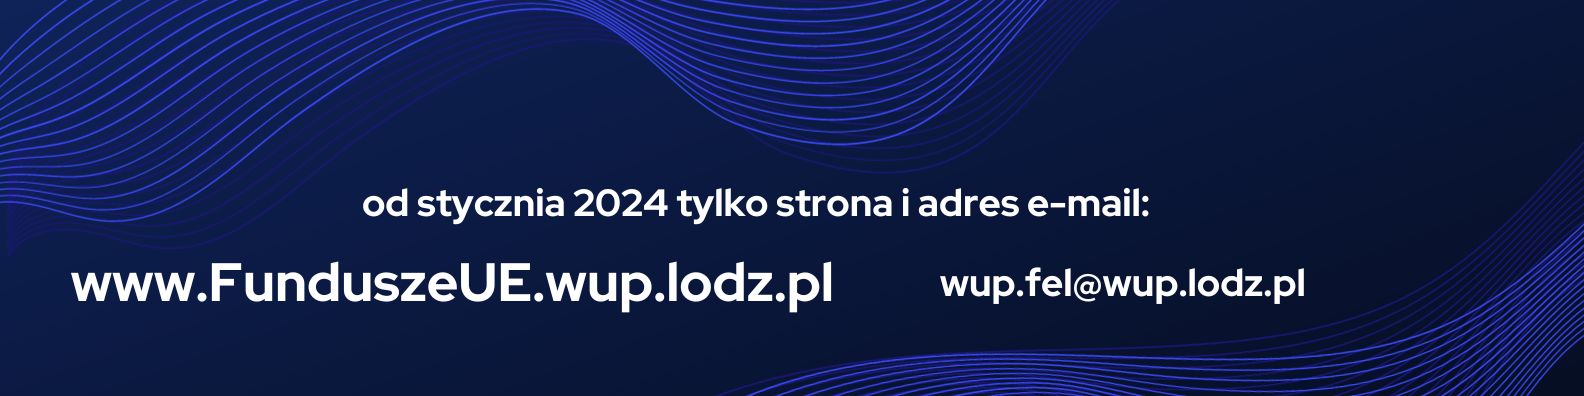 www.funduszeue.wup.lodz.pl